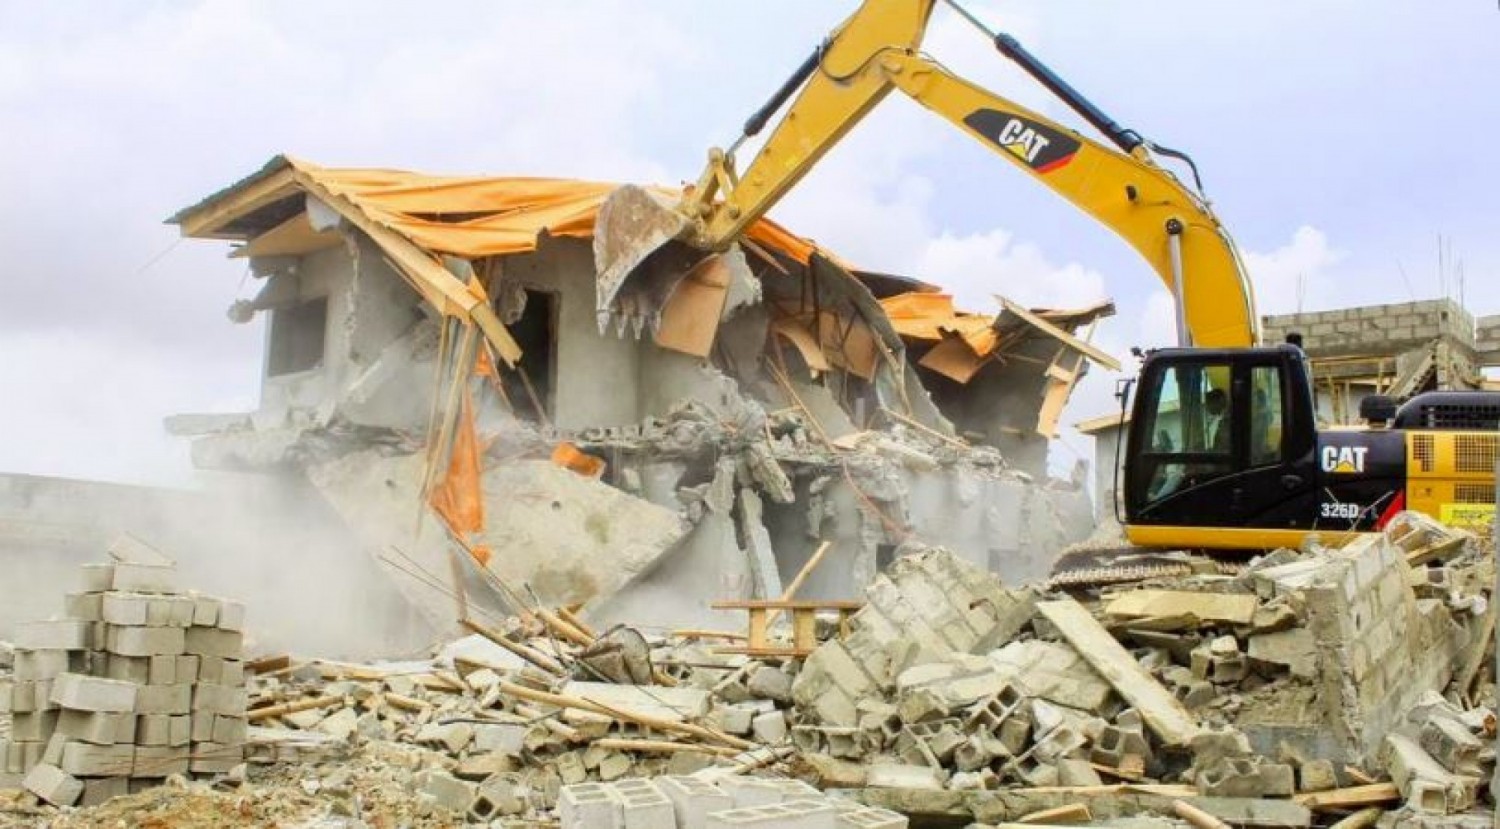 Côte d'Ivoire : Cocody, 09 villas duplex en construction et sans permis de construire, détruites